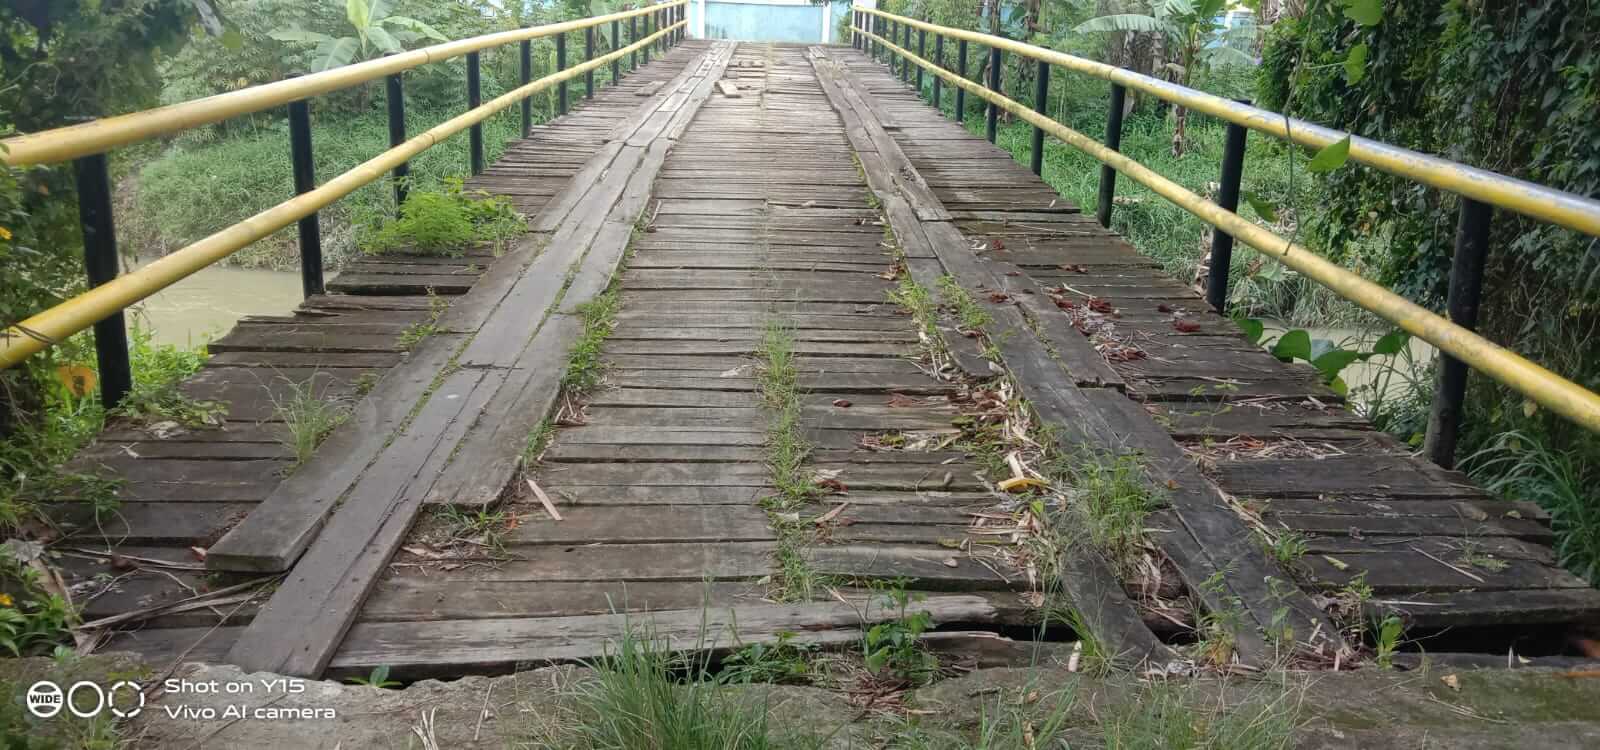 Membahayakan Pengendara, Jembatan Papan Tebat Ijuk Dili Kerinci Rusak dan Butuh Perbaikan 